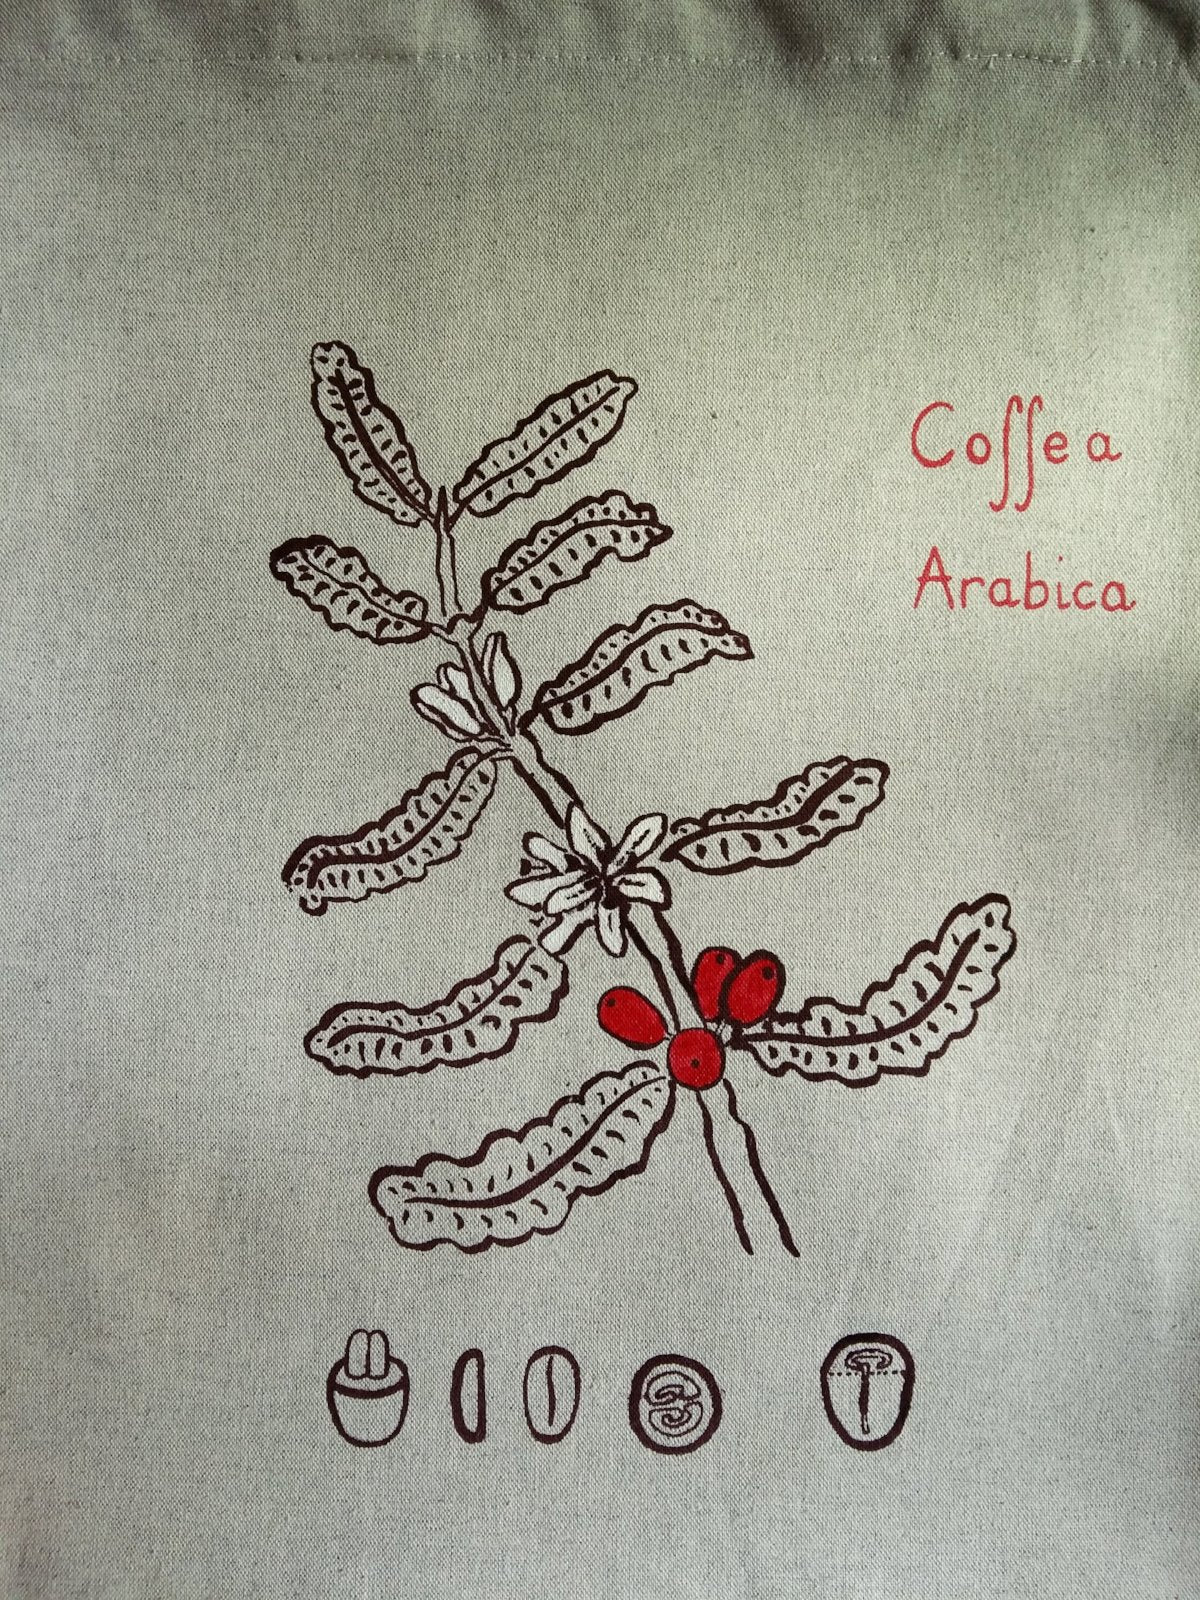 ZOOM botanique botanical plate café coffee mode ethique responsable sac cabas coton biologique recycle serigraphie France renaissance creation decoration